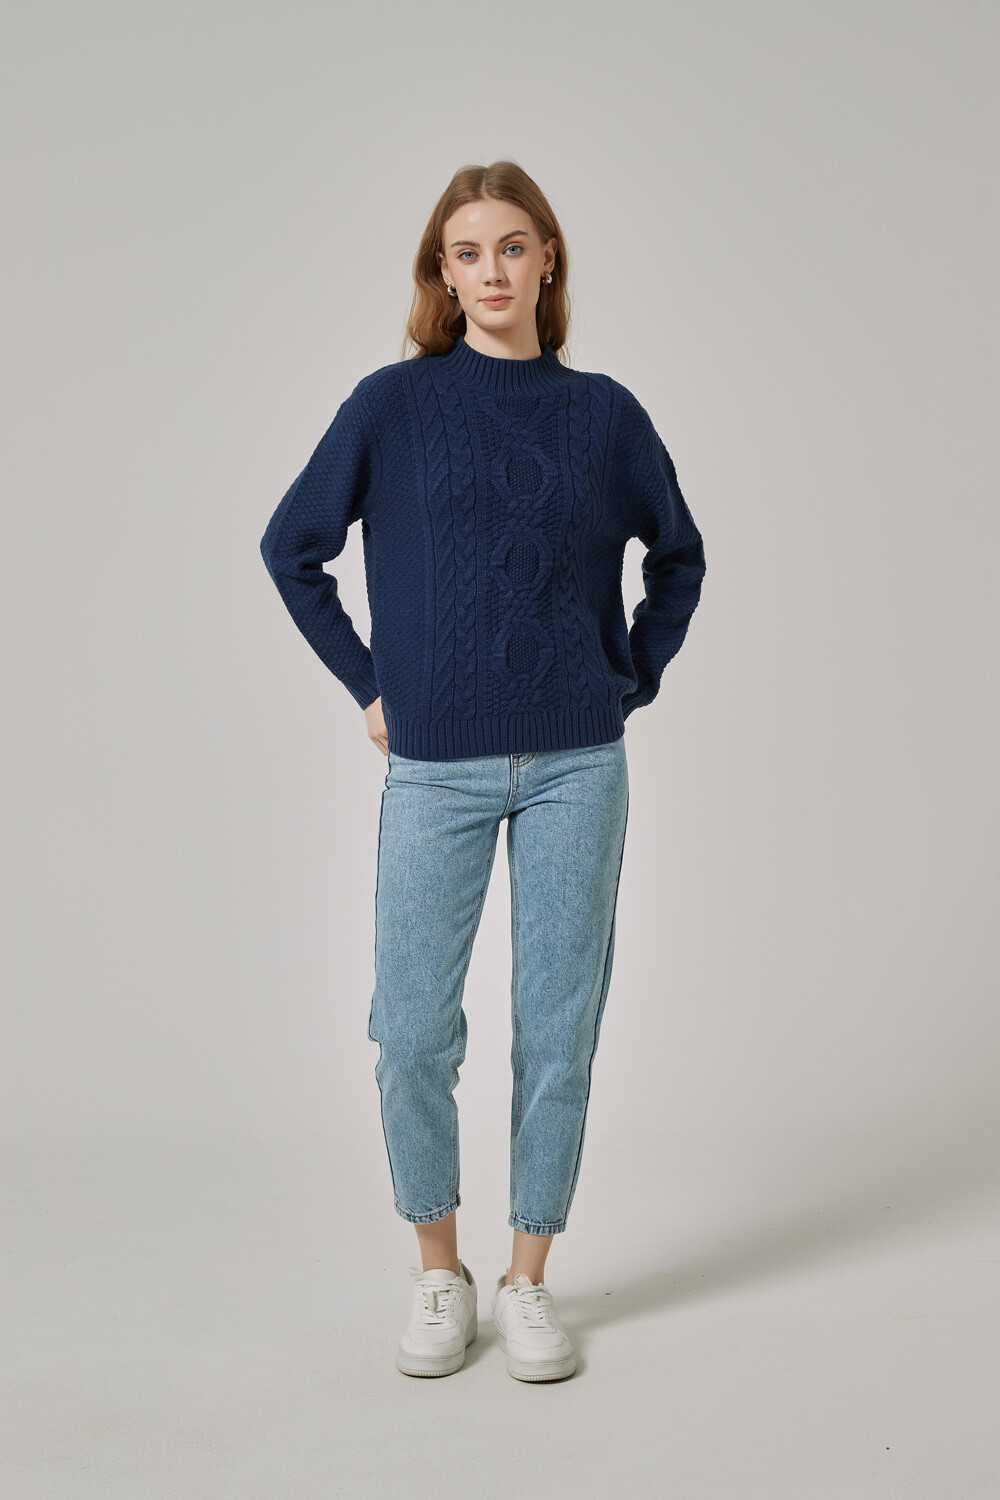 Sweater Aburi Azul Marino